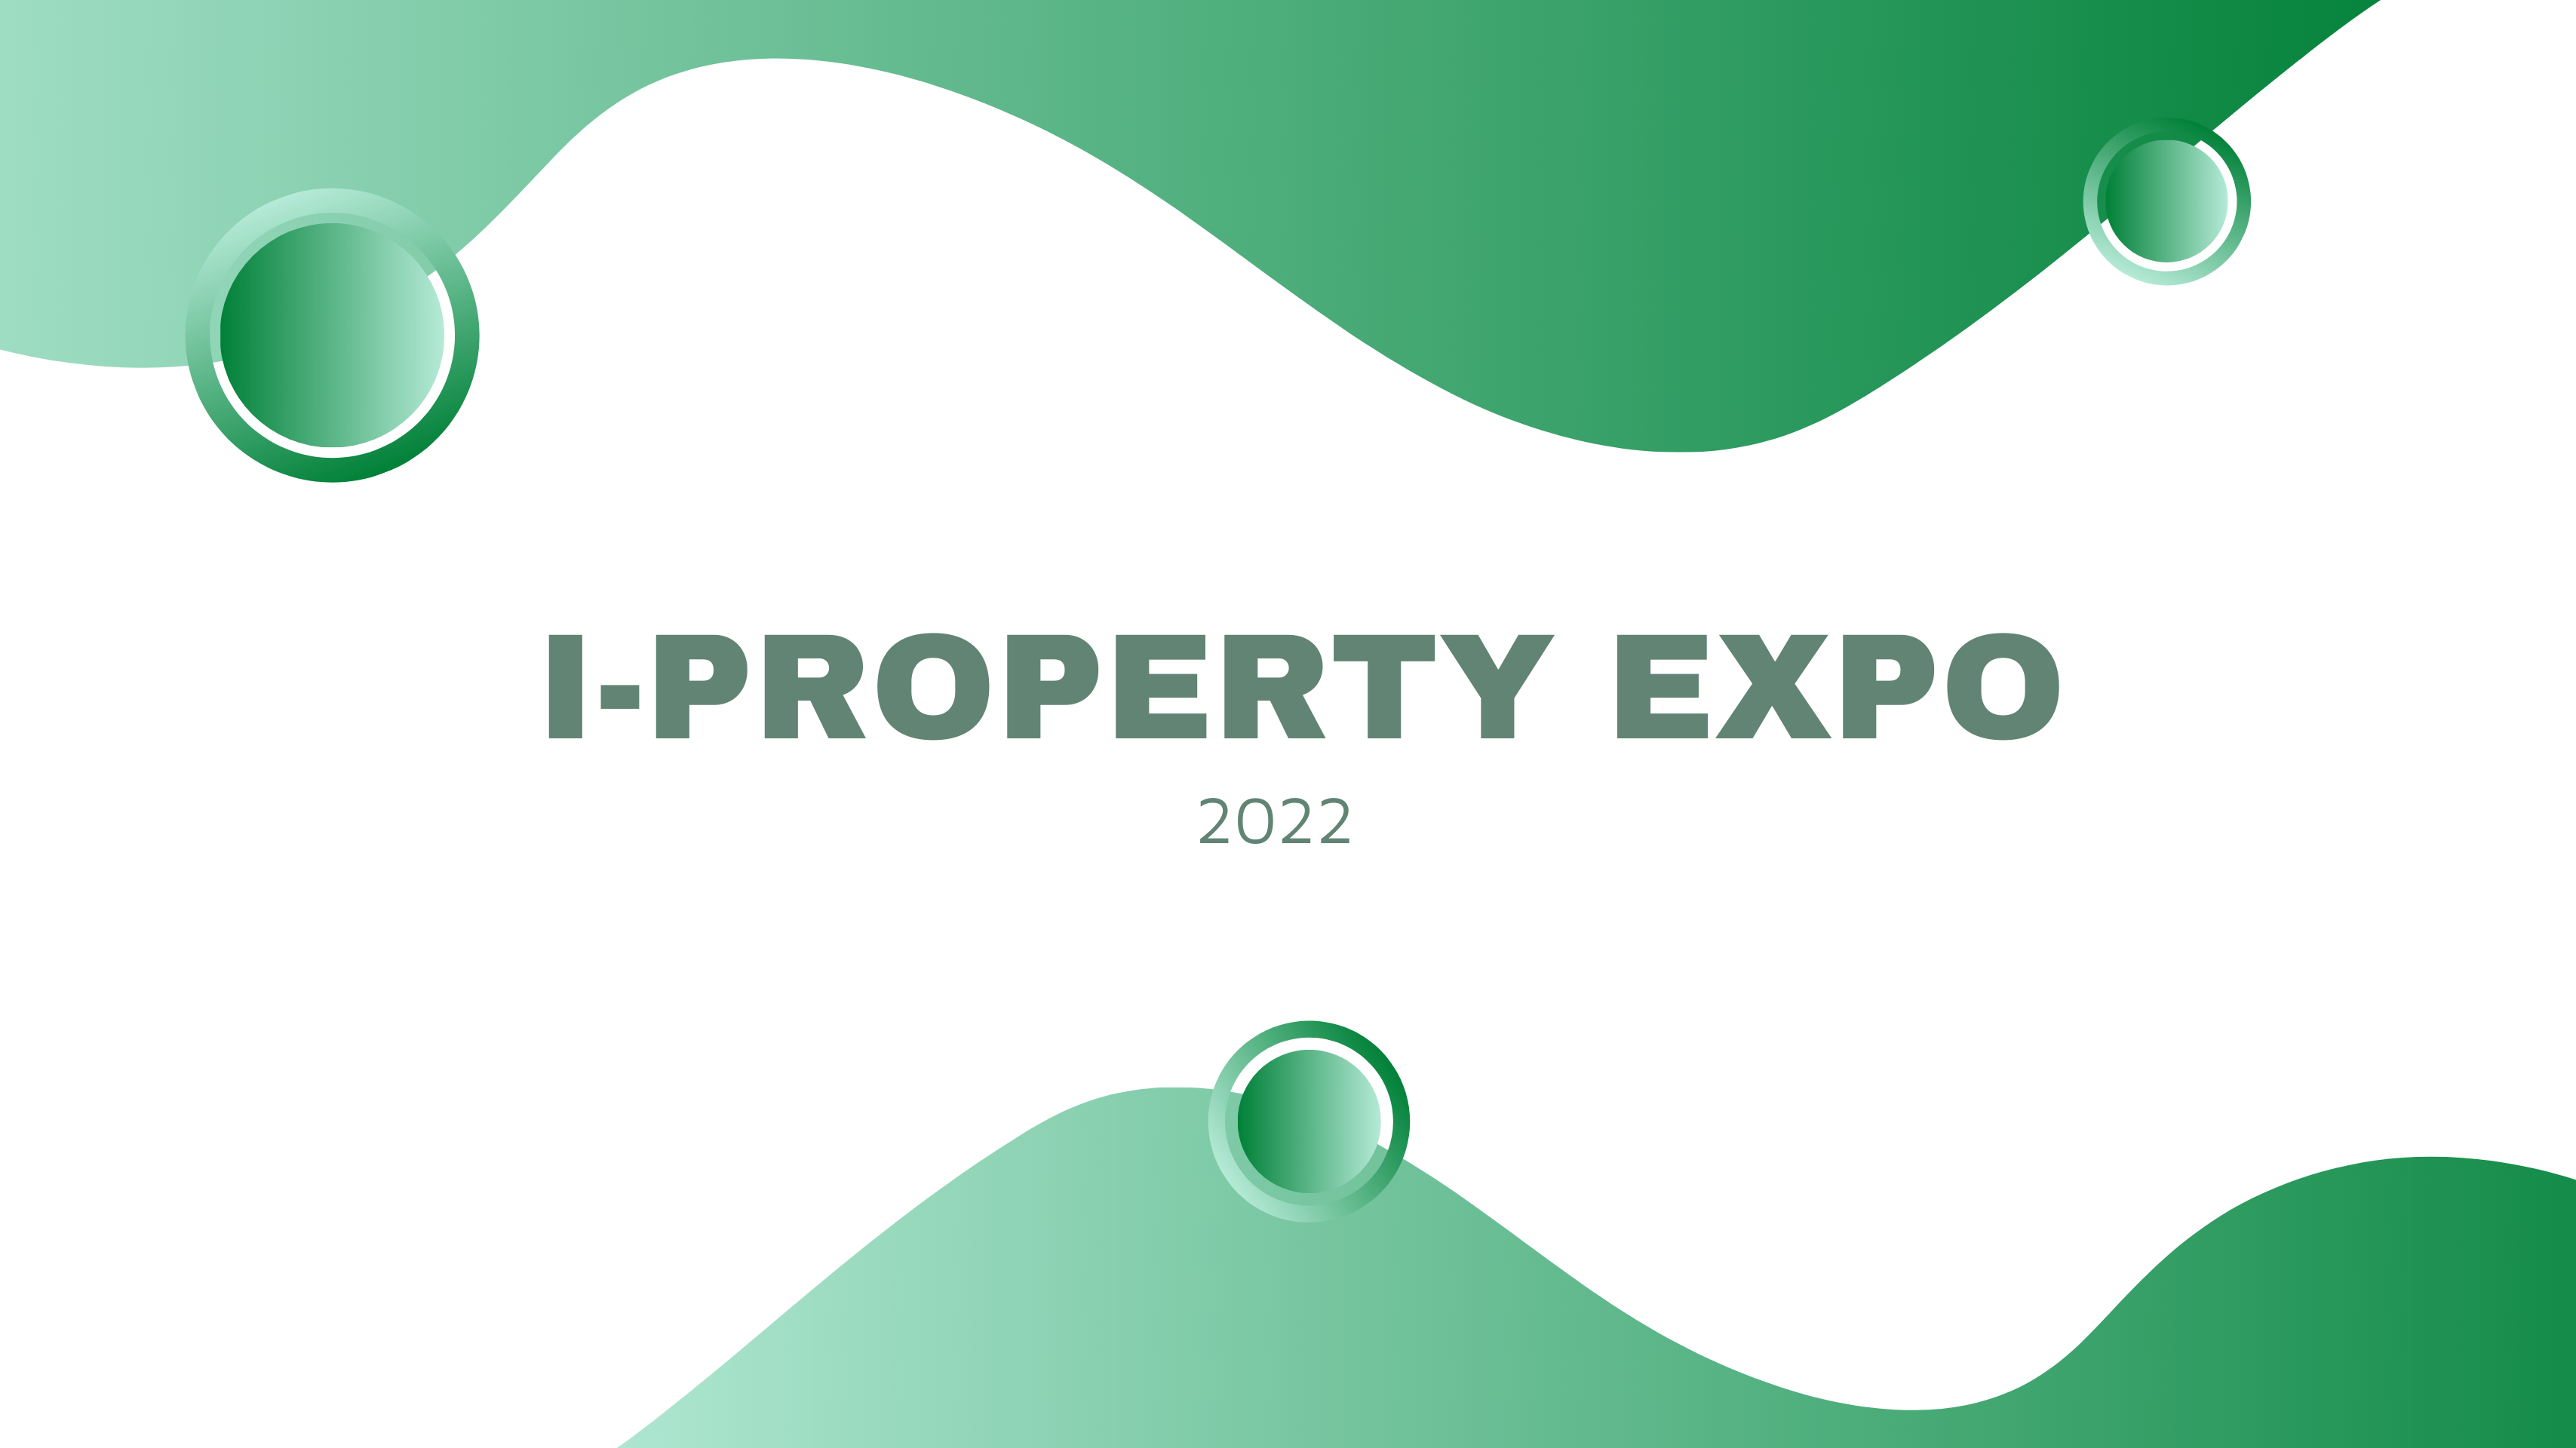 I-Property Expo 2022